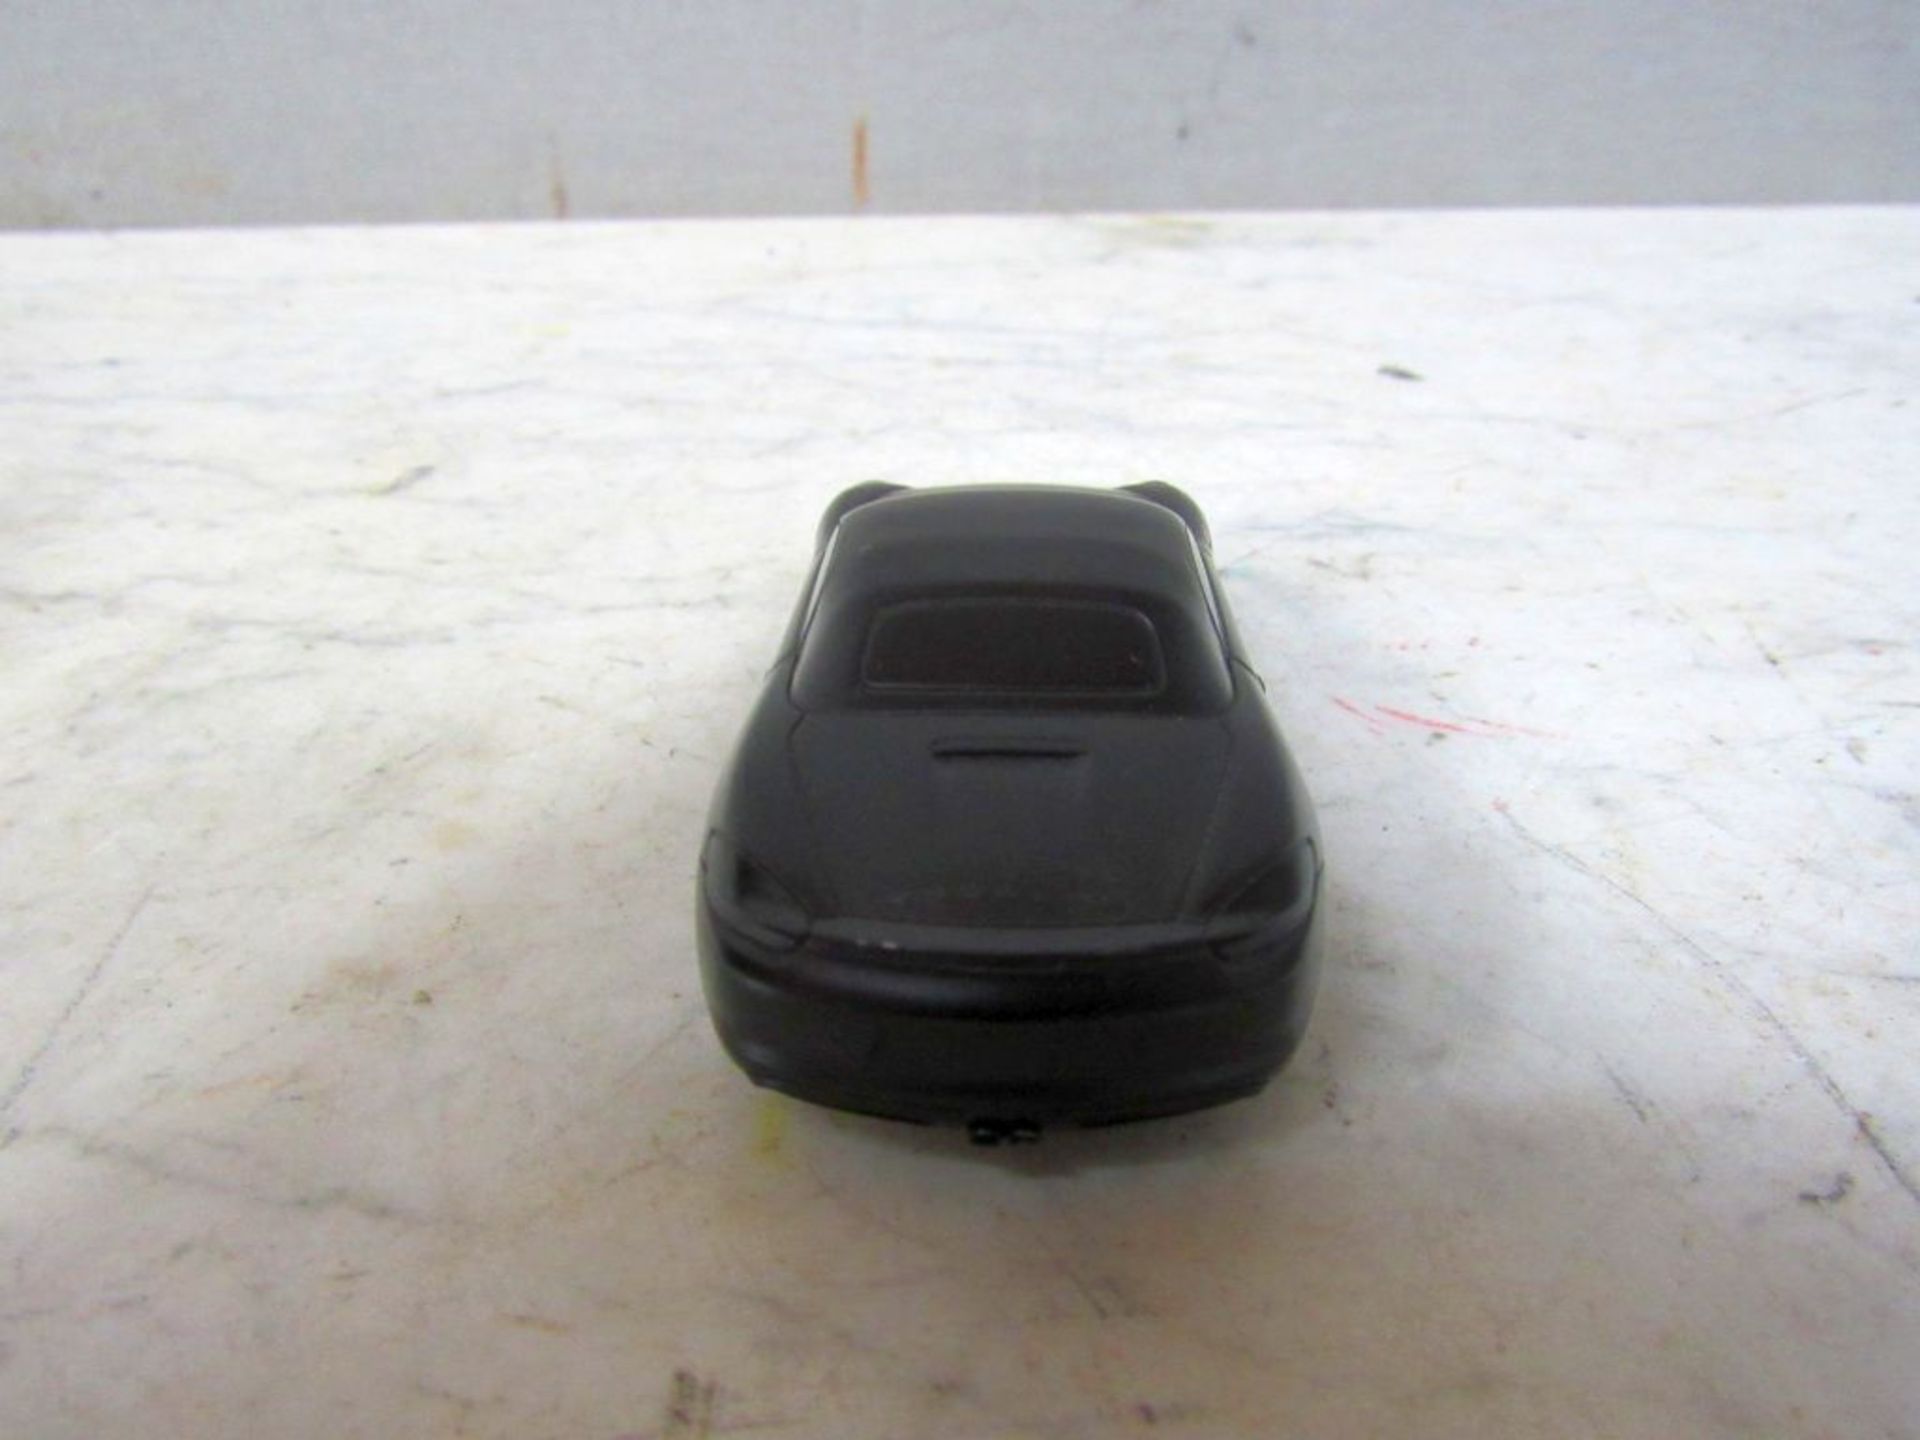 Porsche Modell Boxter - Image 6 of 8